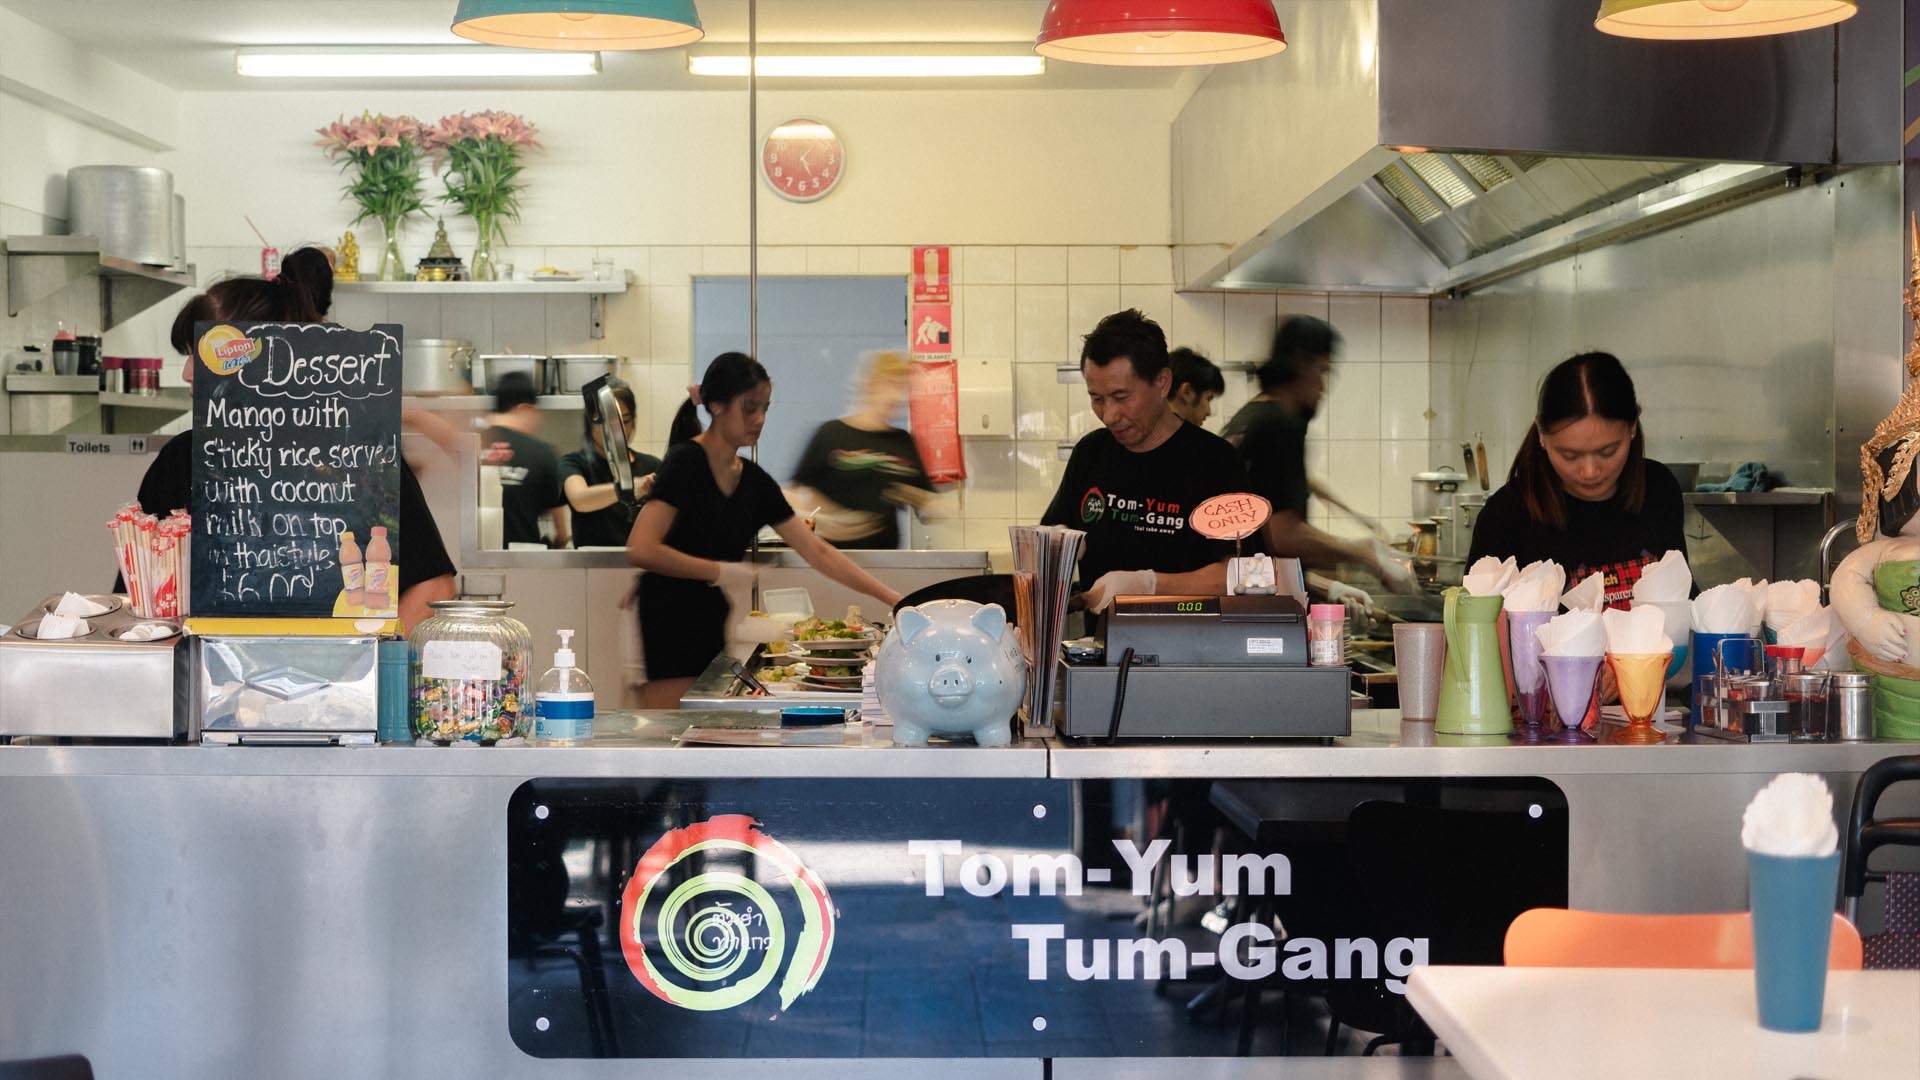 Tom-Yum Tum-Gang